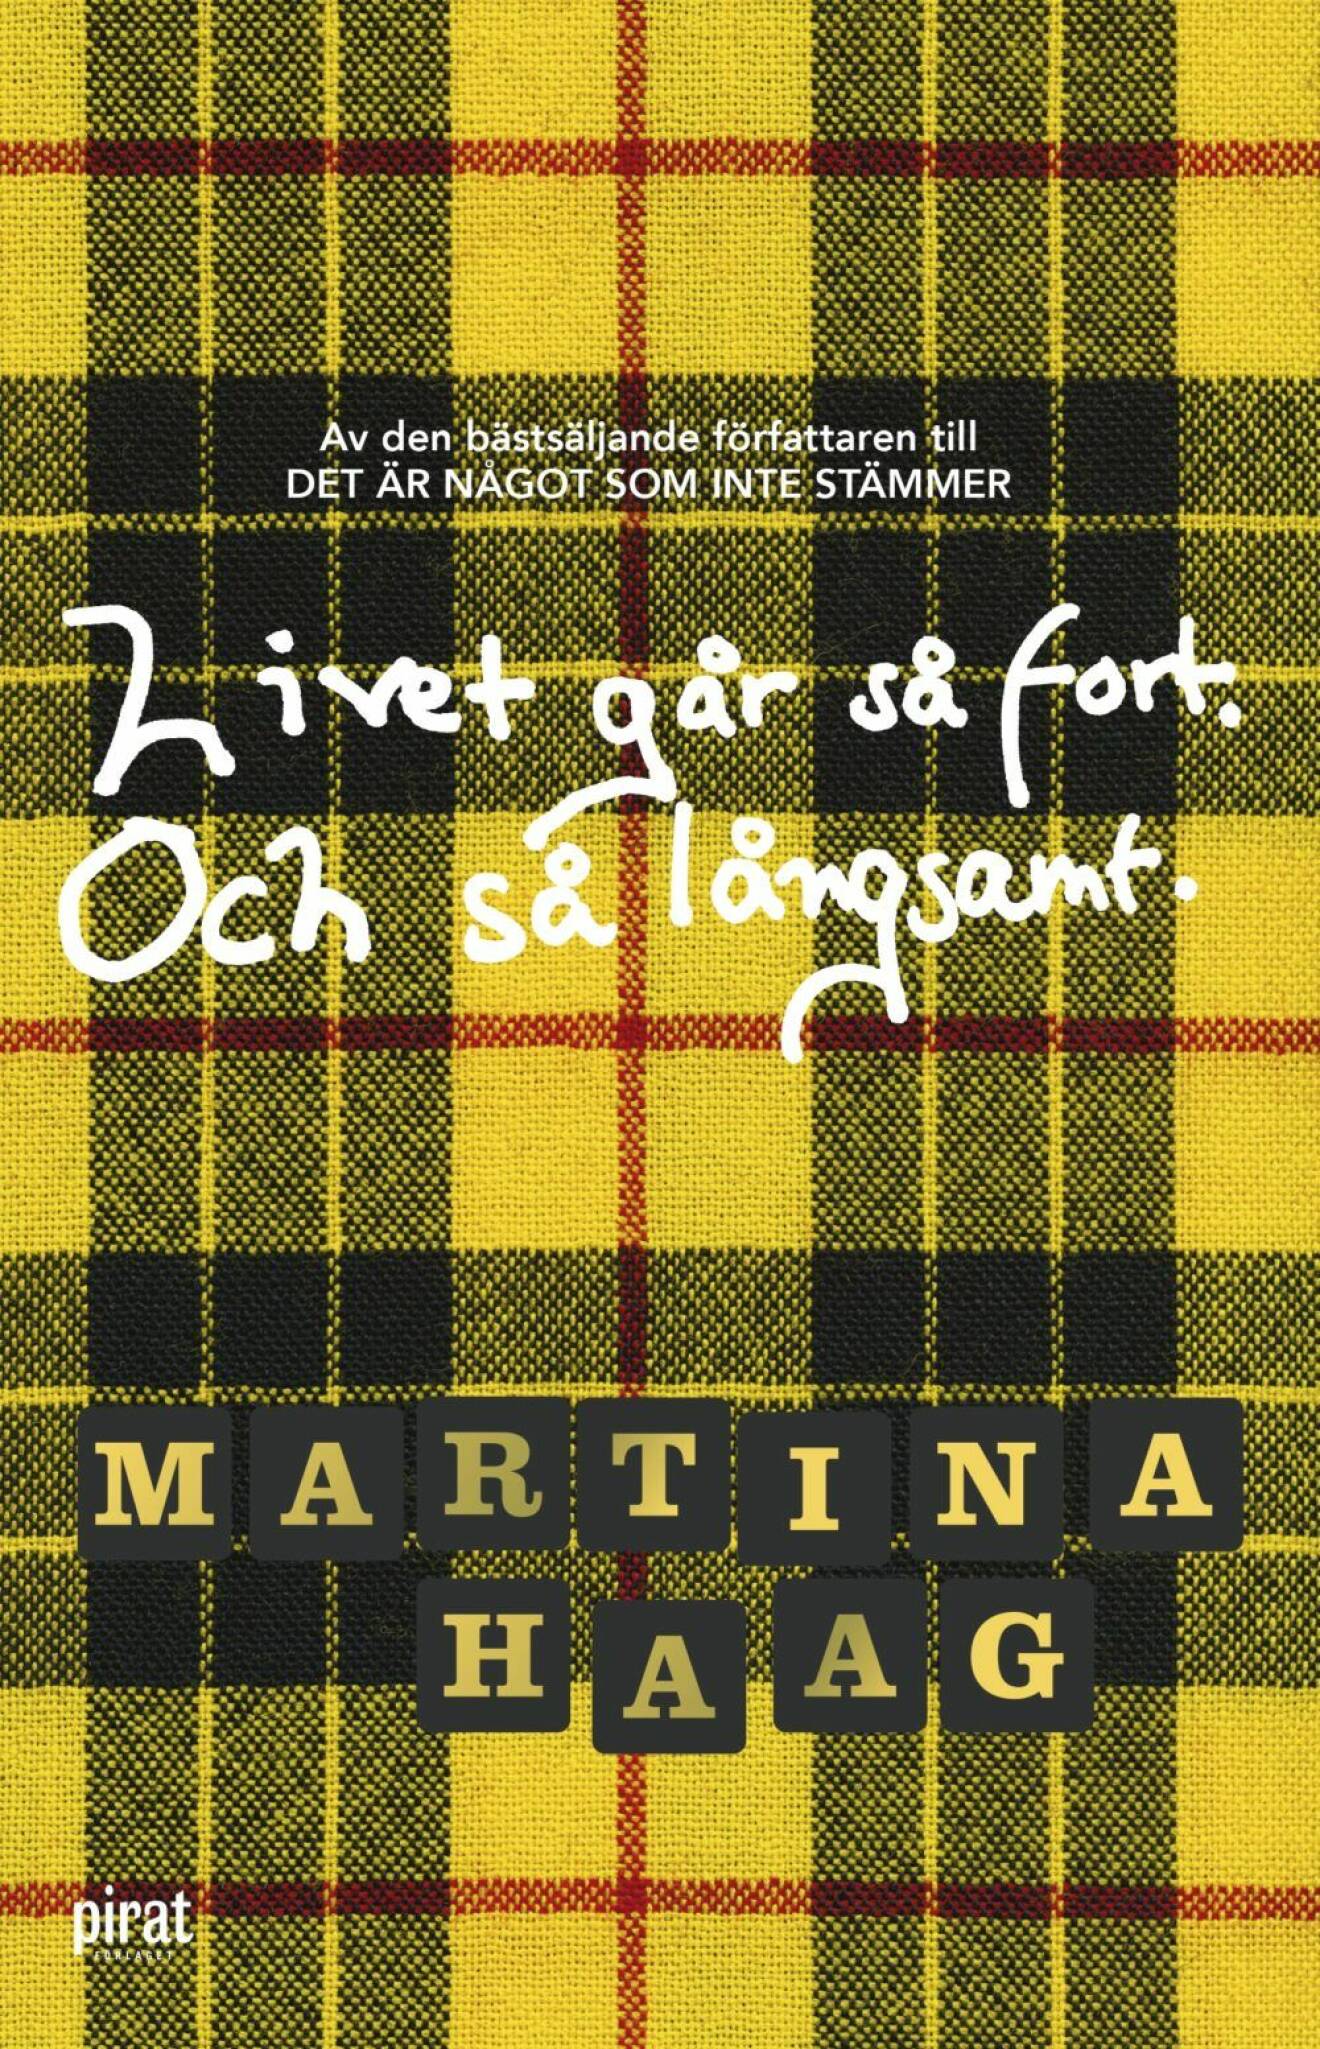 Livet går så fort och så långsamt av Martina Haag.